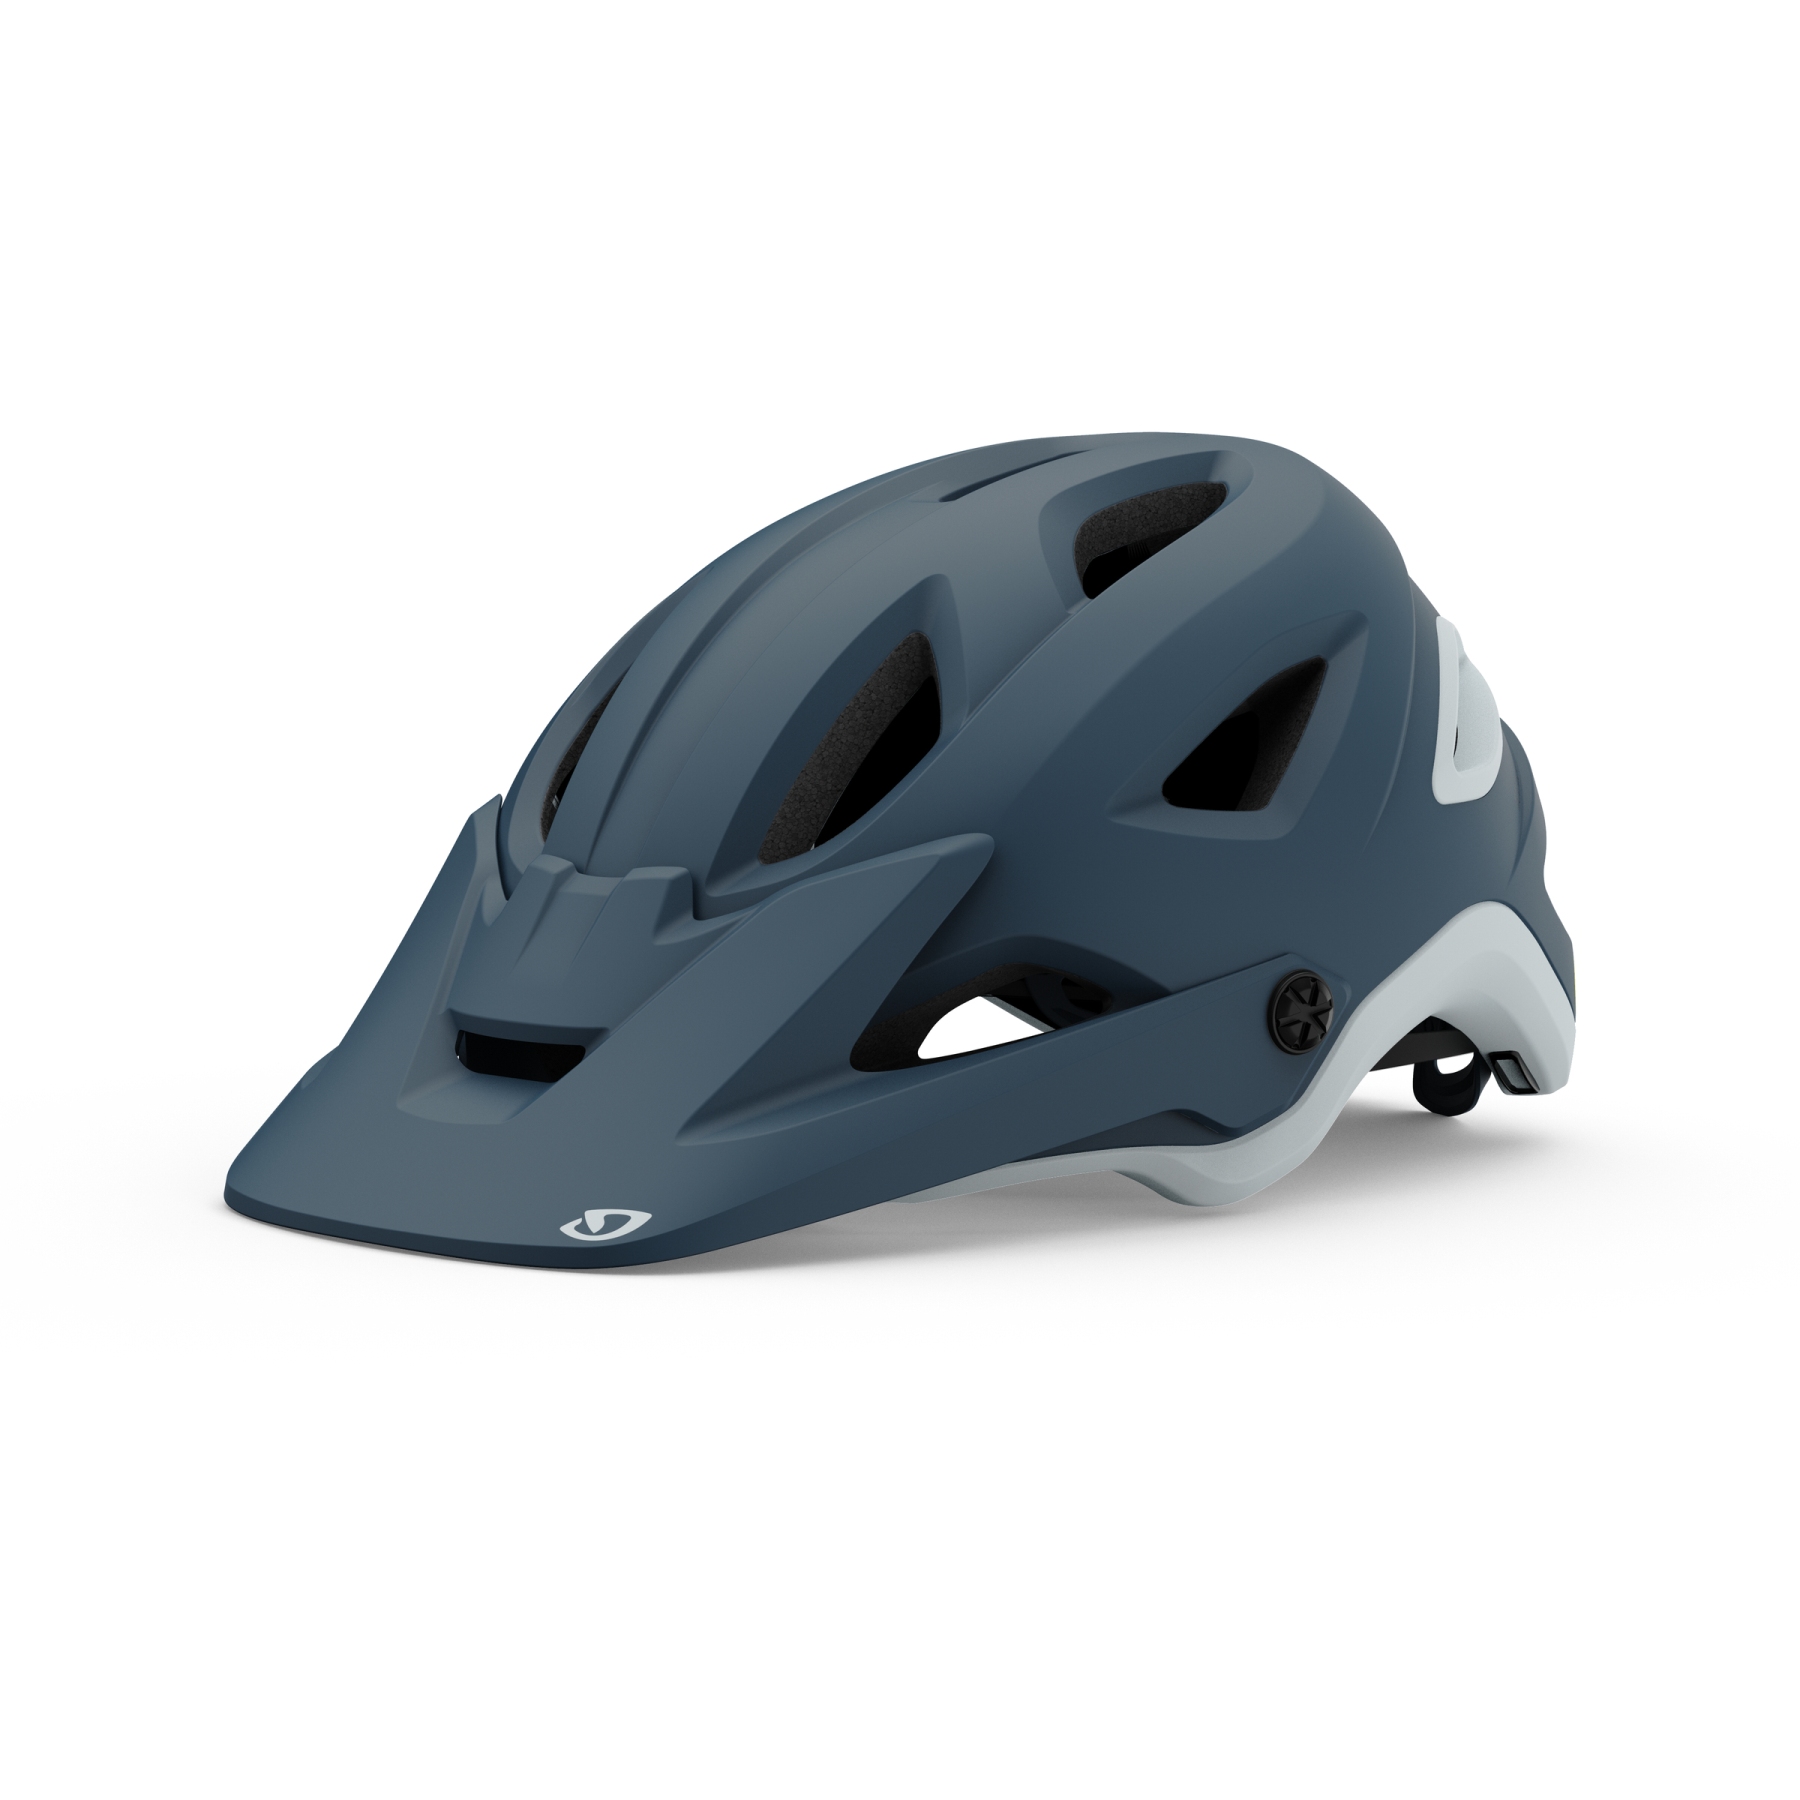 Produktbild von Giro Montaro MIPS II MTB Helm - matte portaro grey